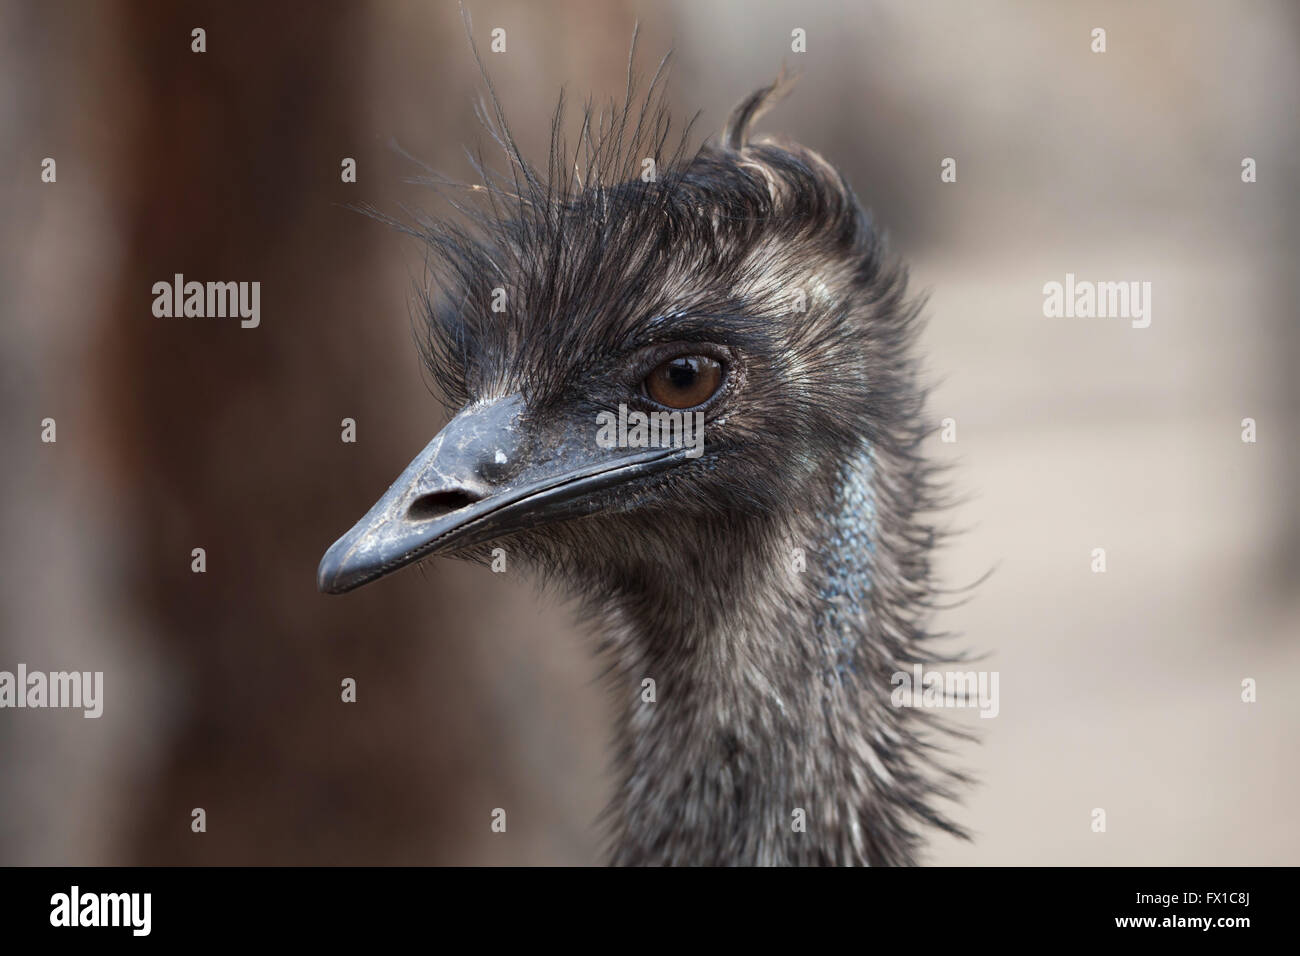 Emu (Dromaius novaehollandiae) at Budapest Zoo in Budapest, Hungary. Stock Photo